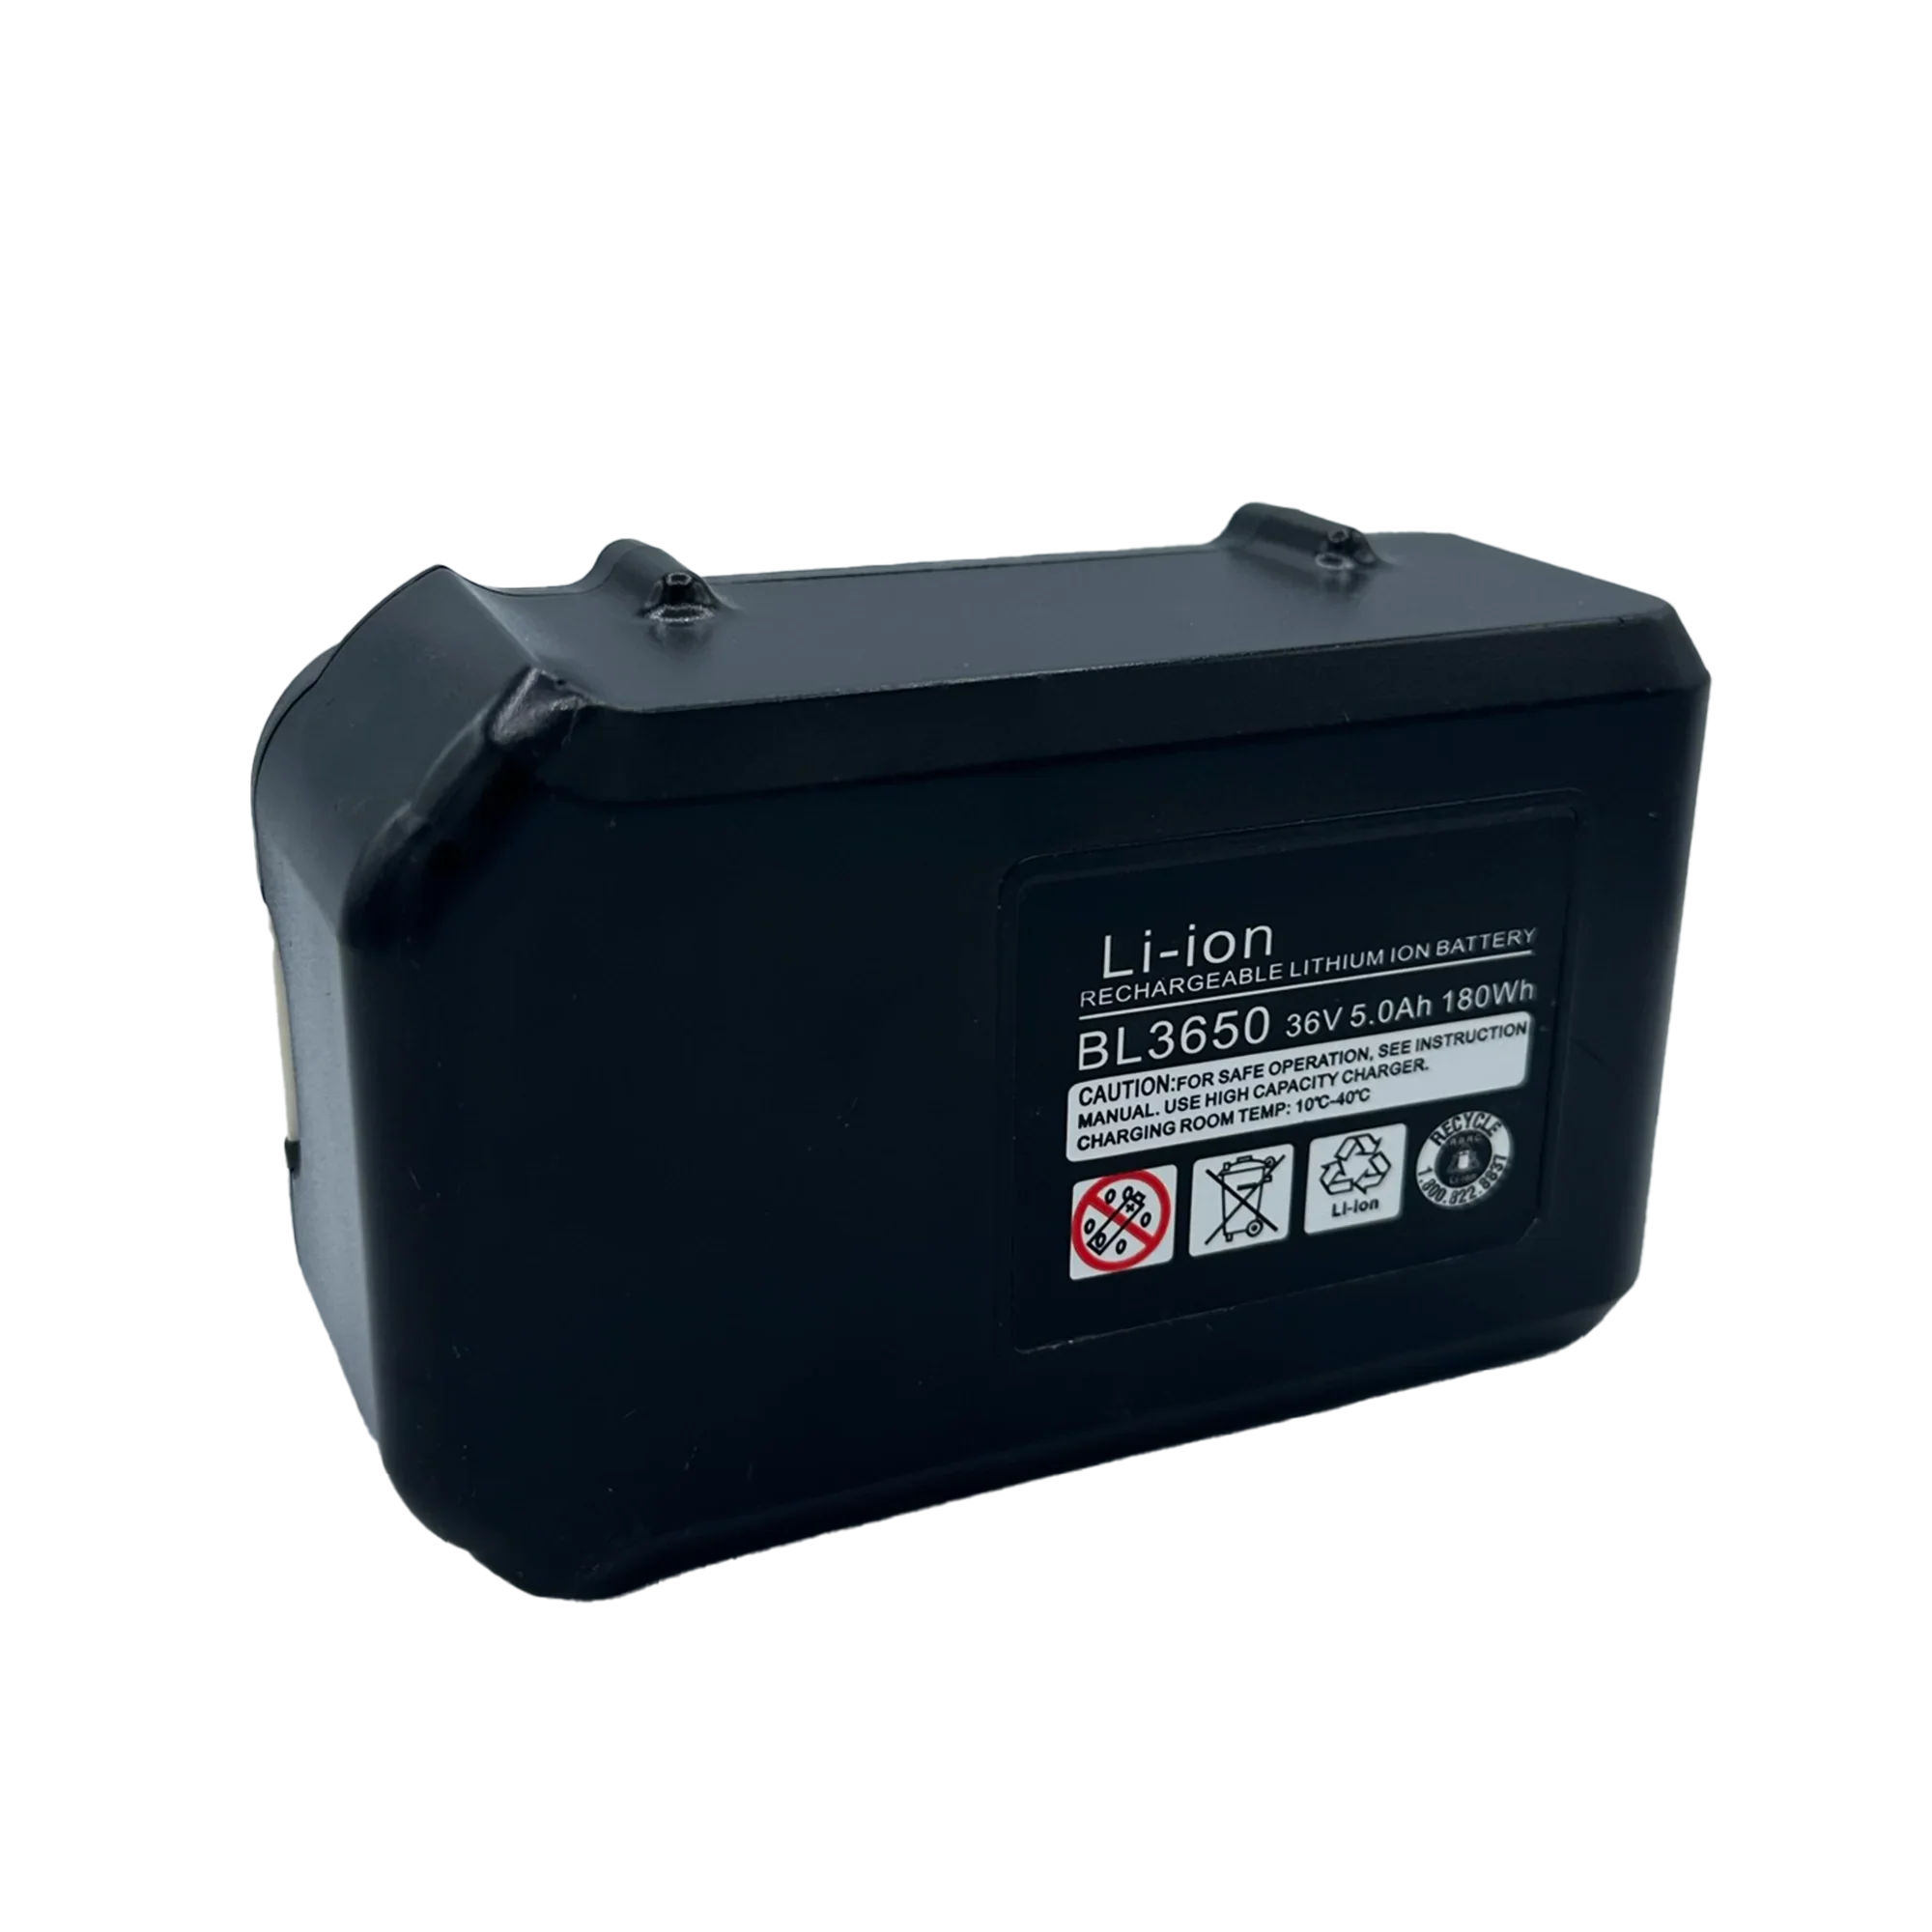 Battery Pack for Mobile Stairlift LITE